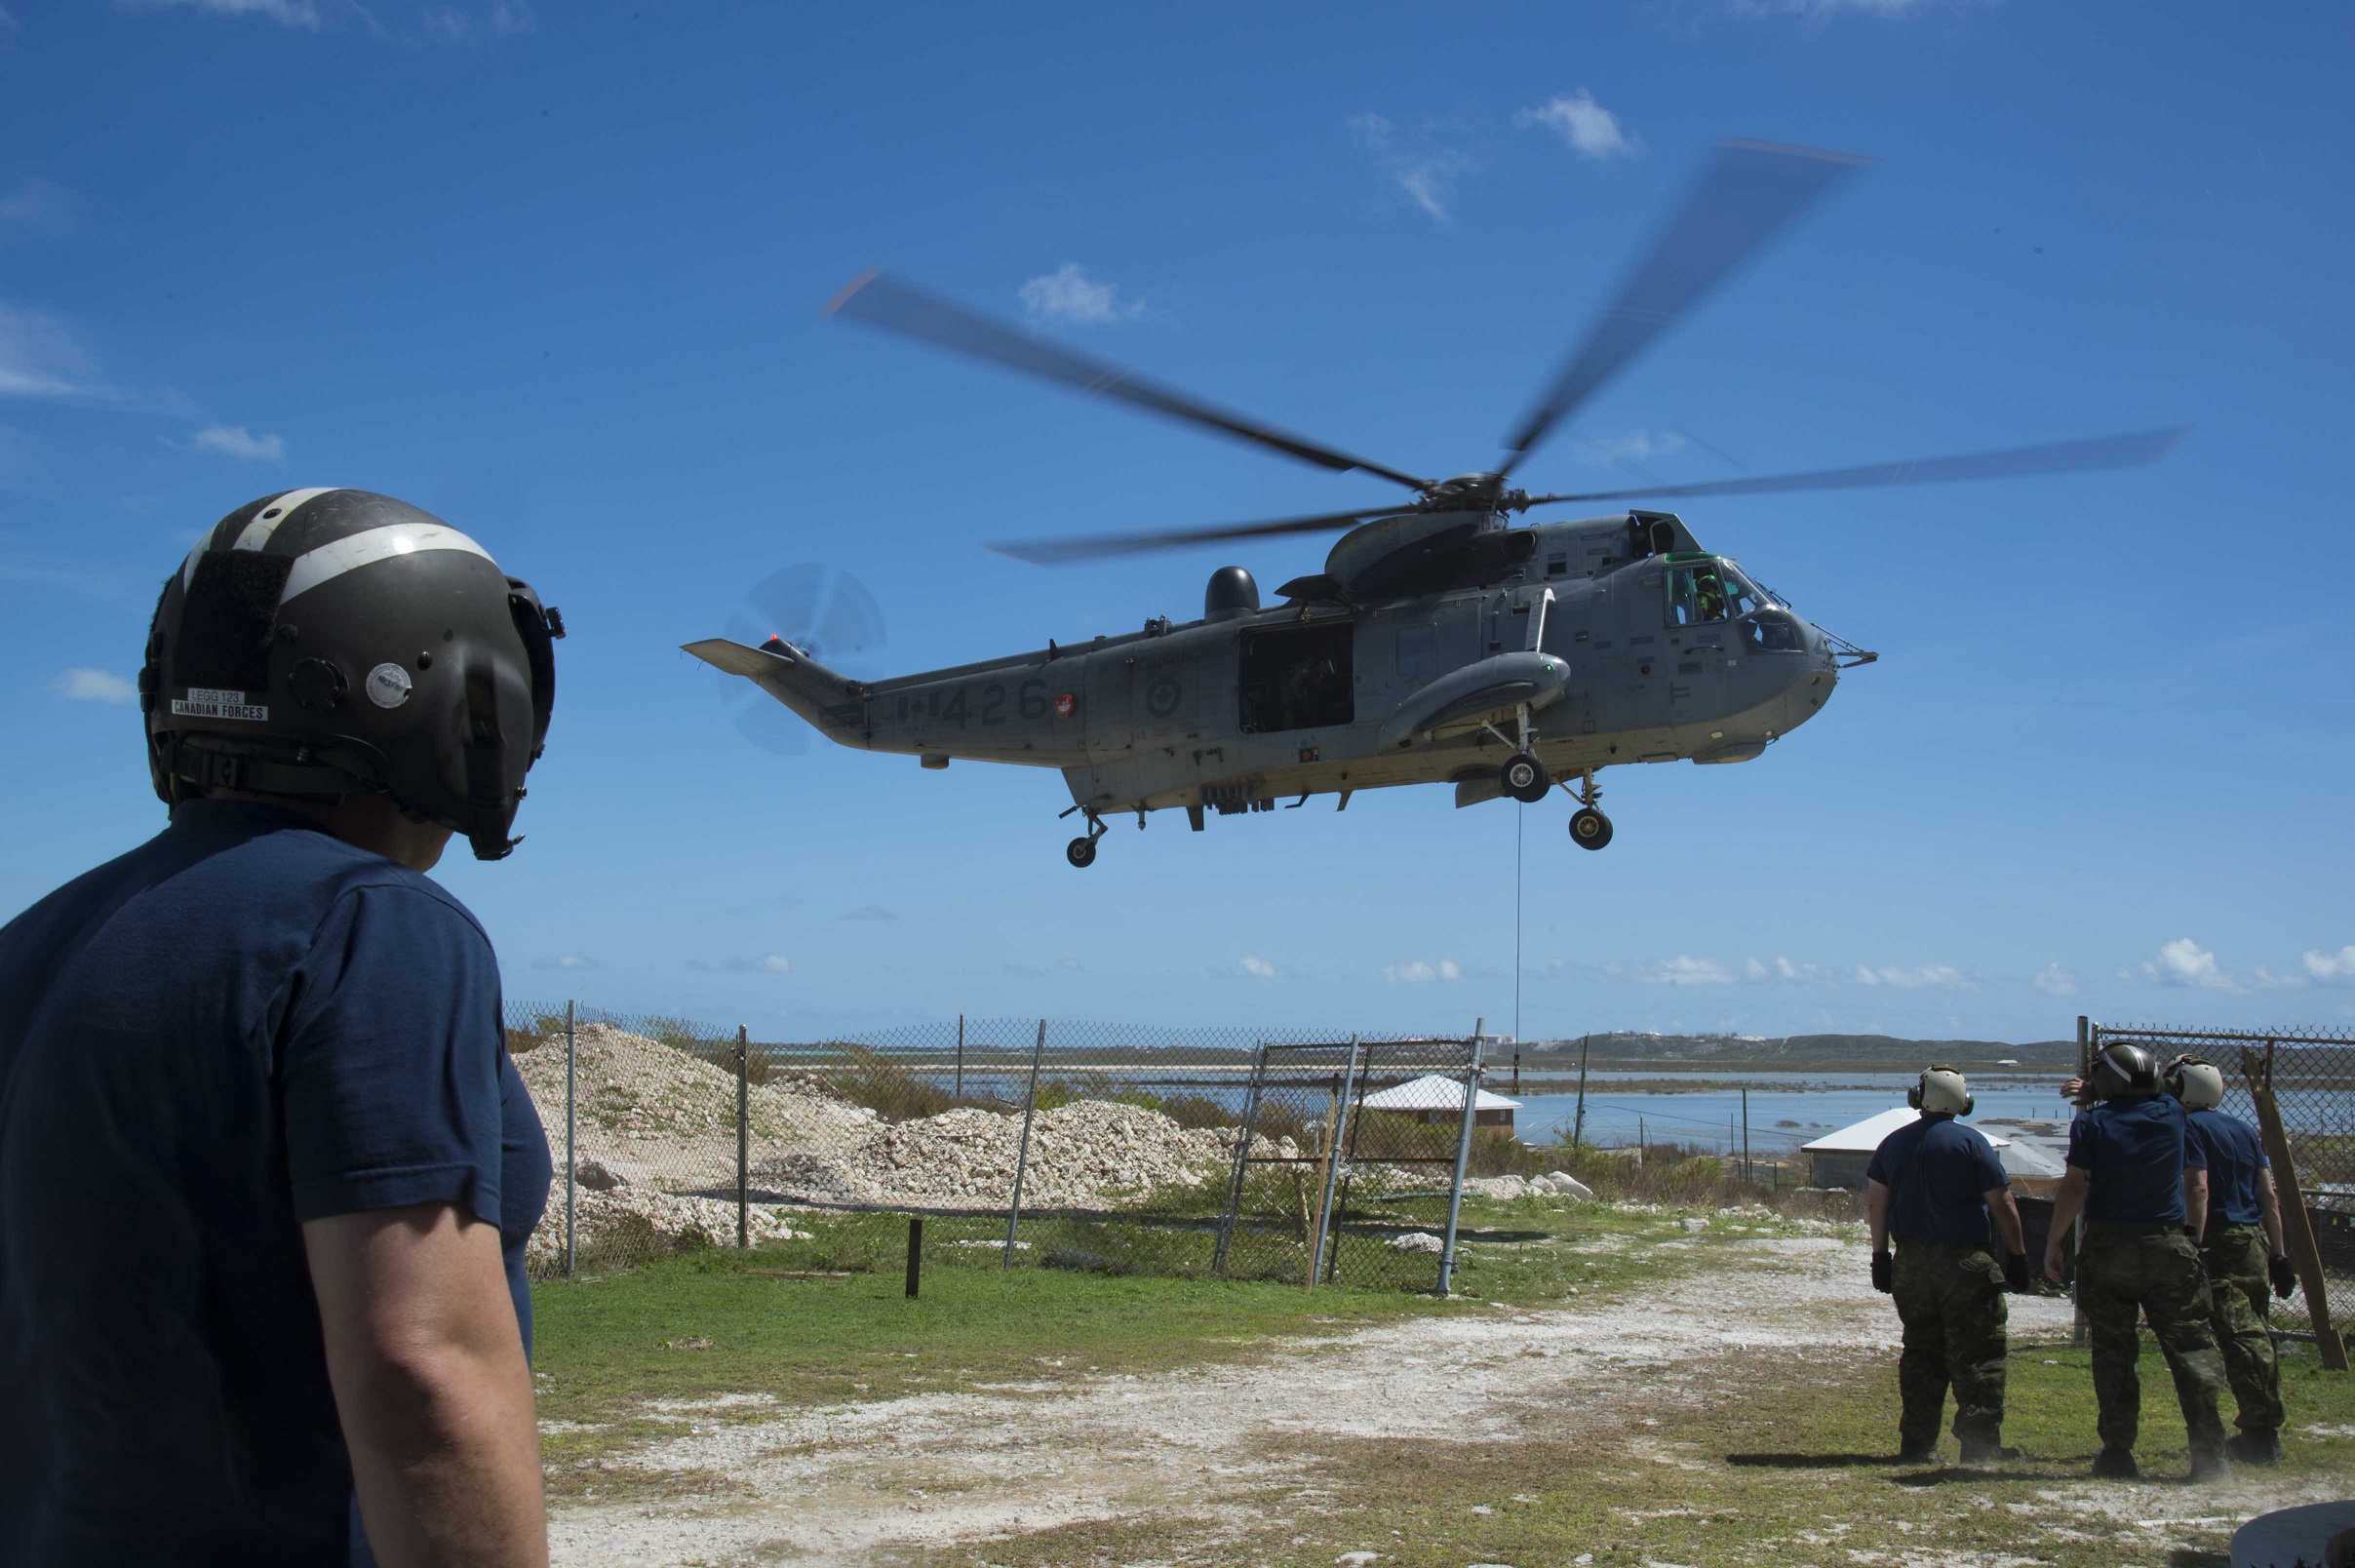 19 septembre 2017. Un hélicoptère CH-124 Sea King assure le transport de fournitures jusqu’à l’île de South Caicos au cours de l’opération RENAISSANCE IRMA, la mission d’aide humanitaire menée à la suite du passage de l’ouragan Irma, dans les Caraïbes, le 19 septembre 2017. Photo : Cplc Chris Ringius, Services d’imagerie de la formation Halifax 